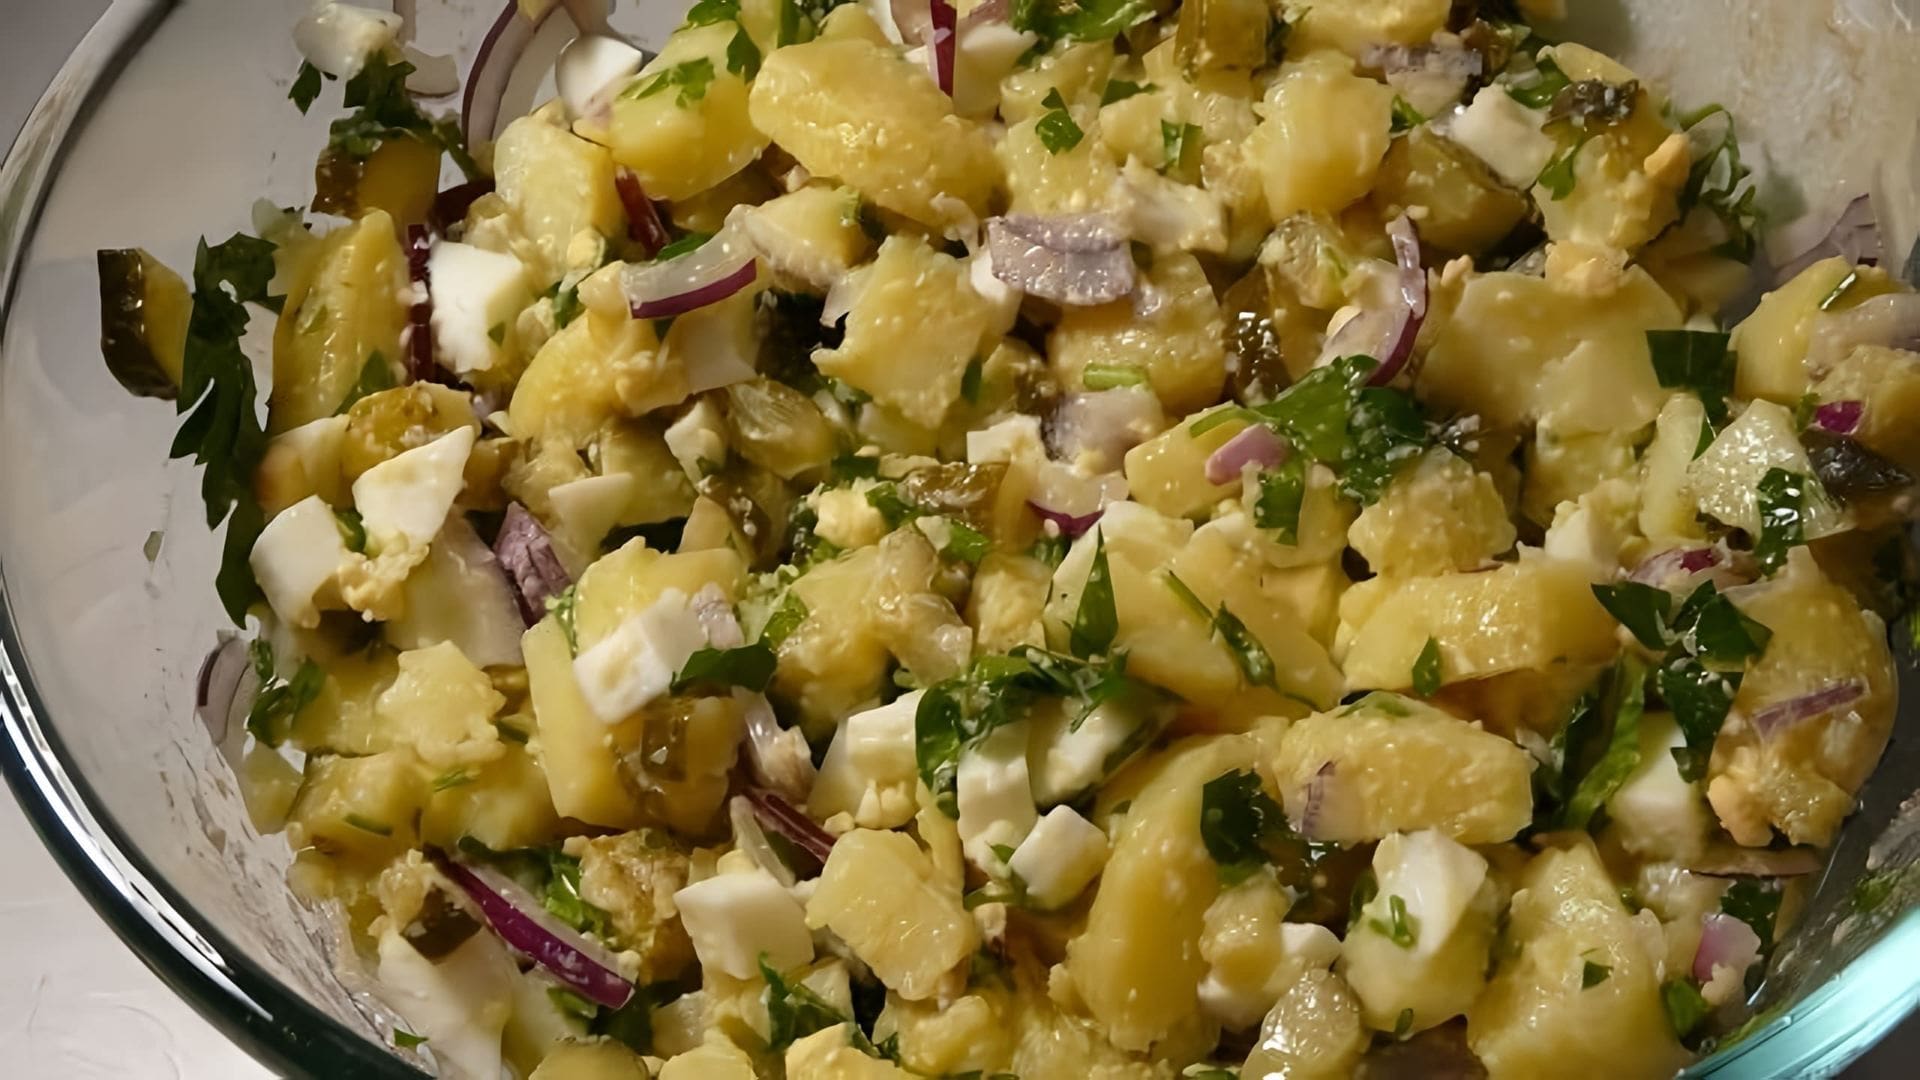 В этом видео демонстрируется рецепт картофельного салата, который можно приготовить на каждый день